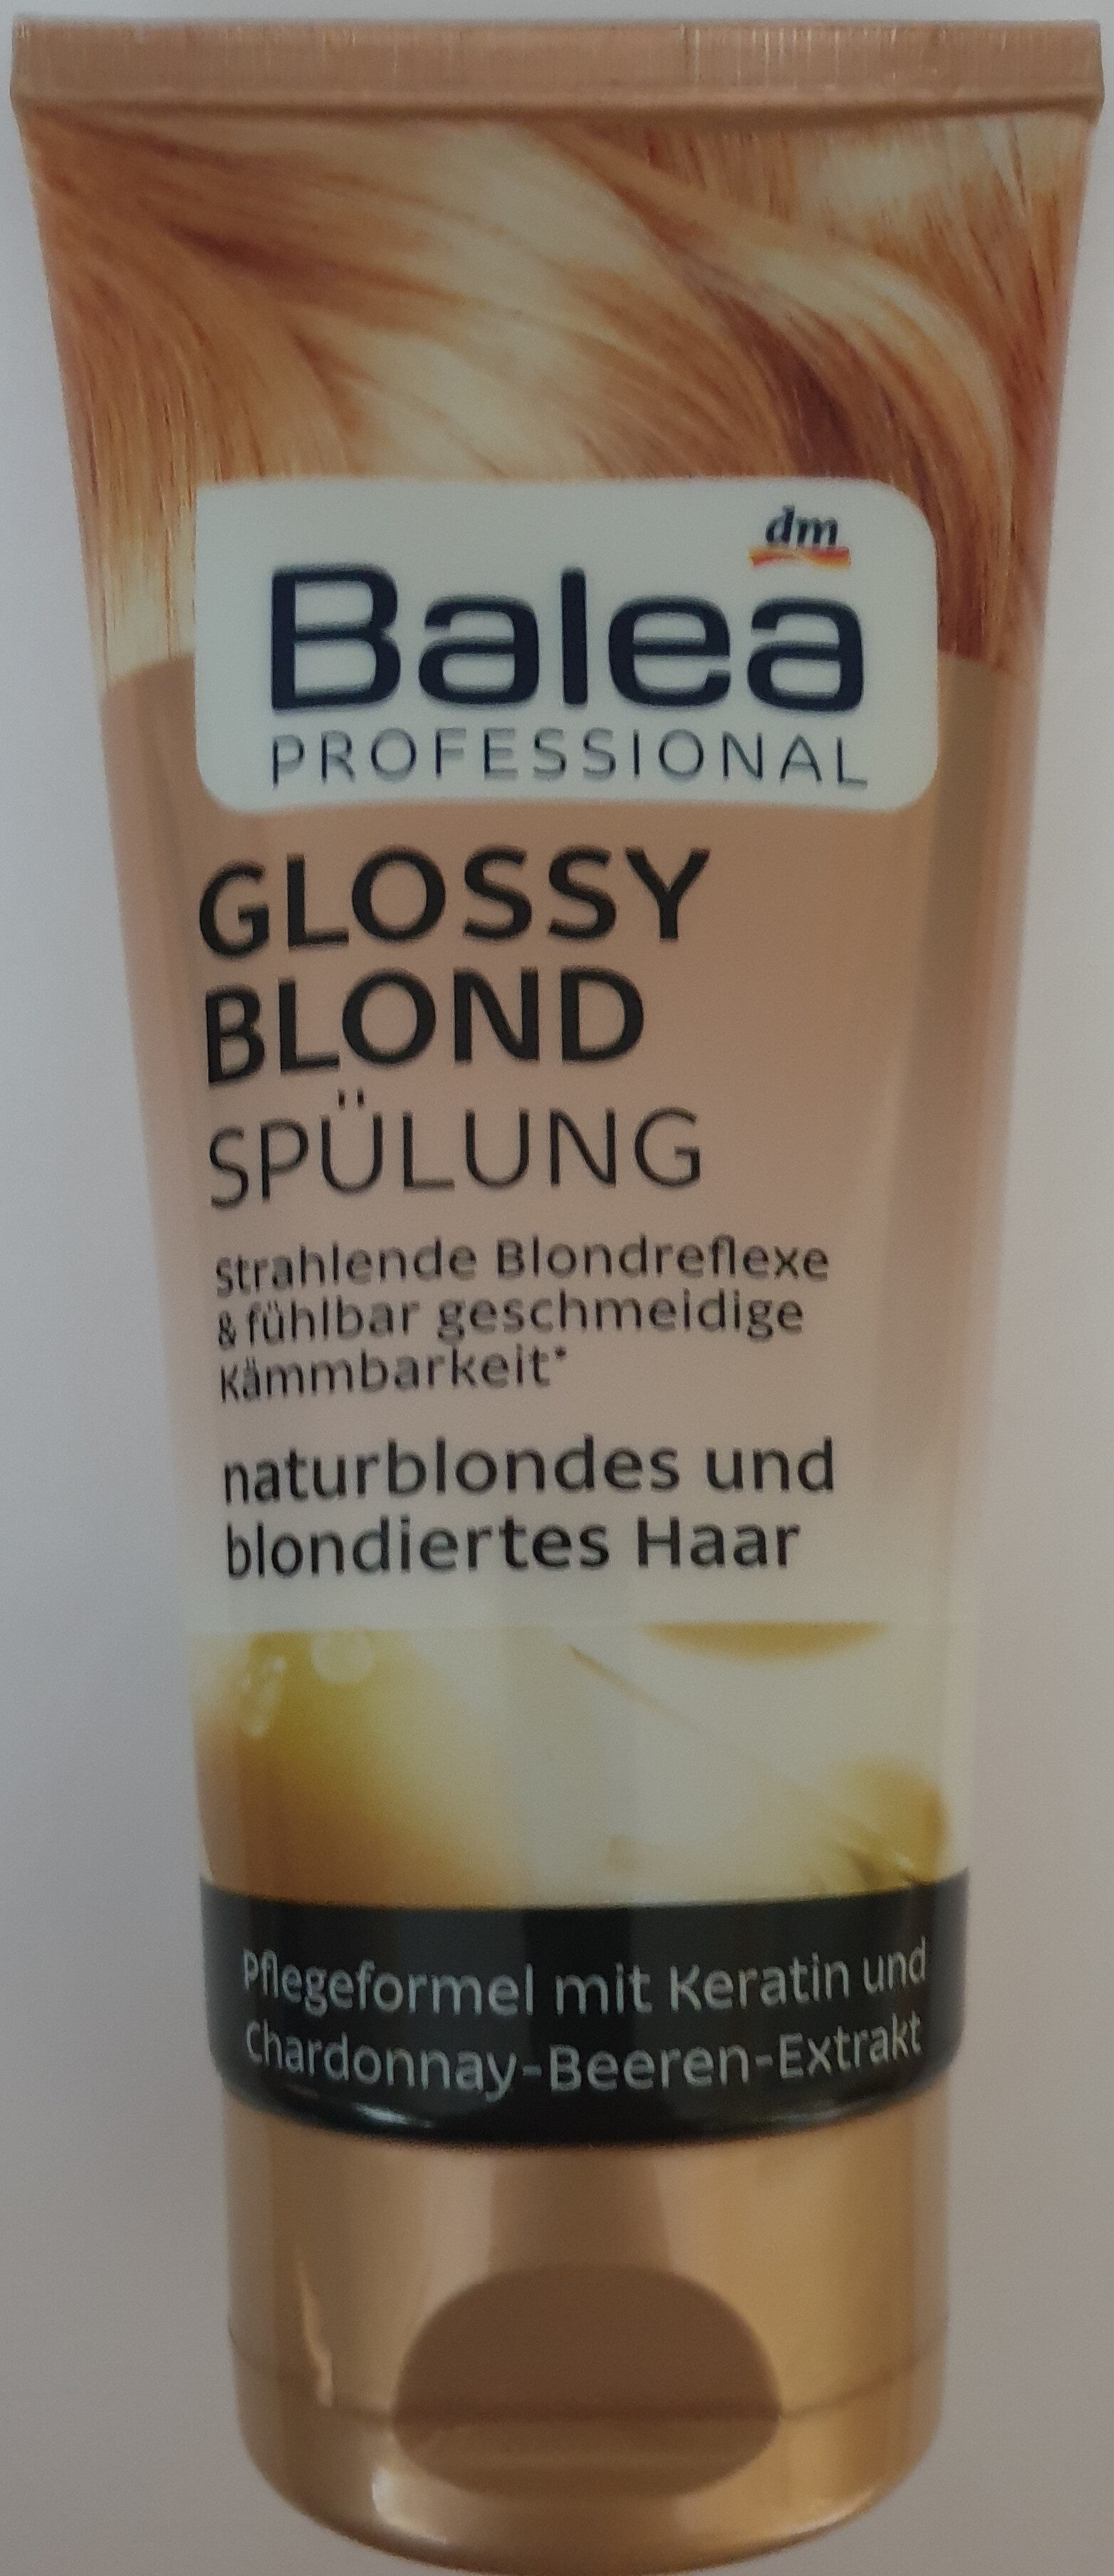 Glossy blond Spülung, naturblondes und blondiertes Haar - Product - de